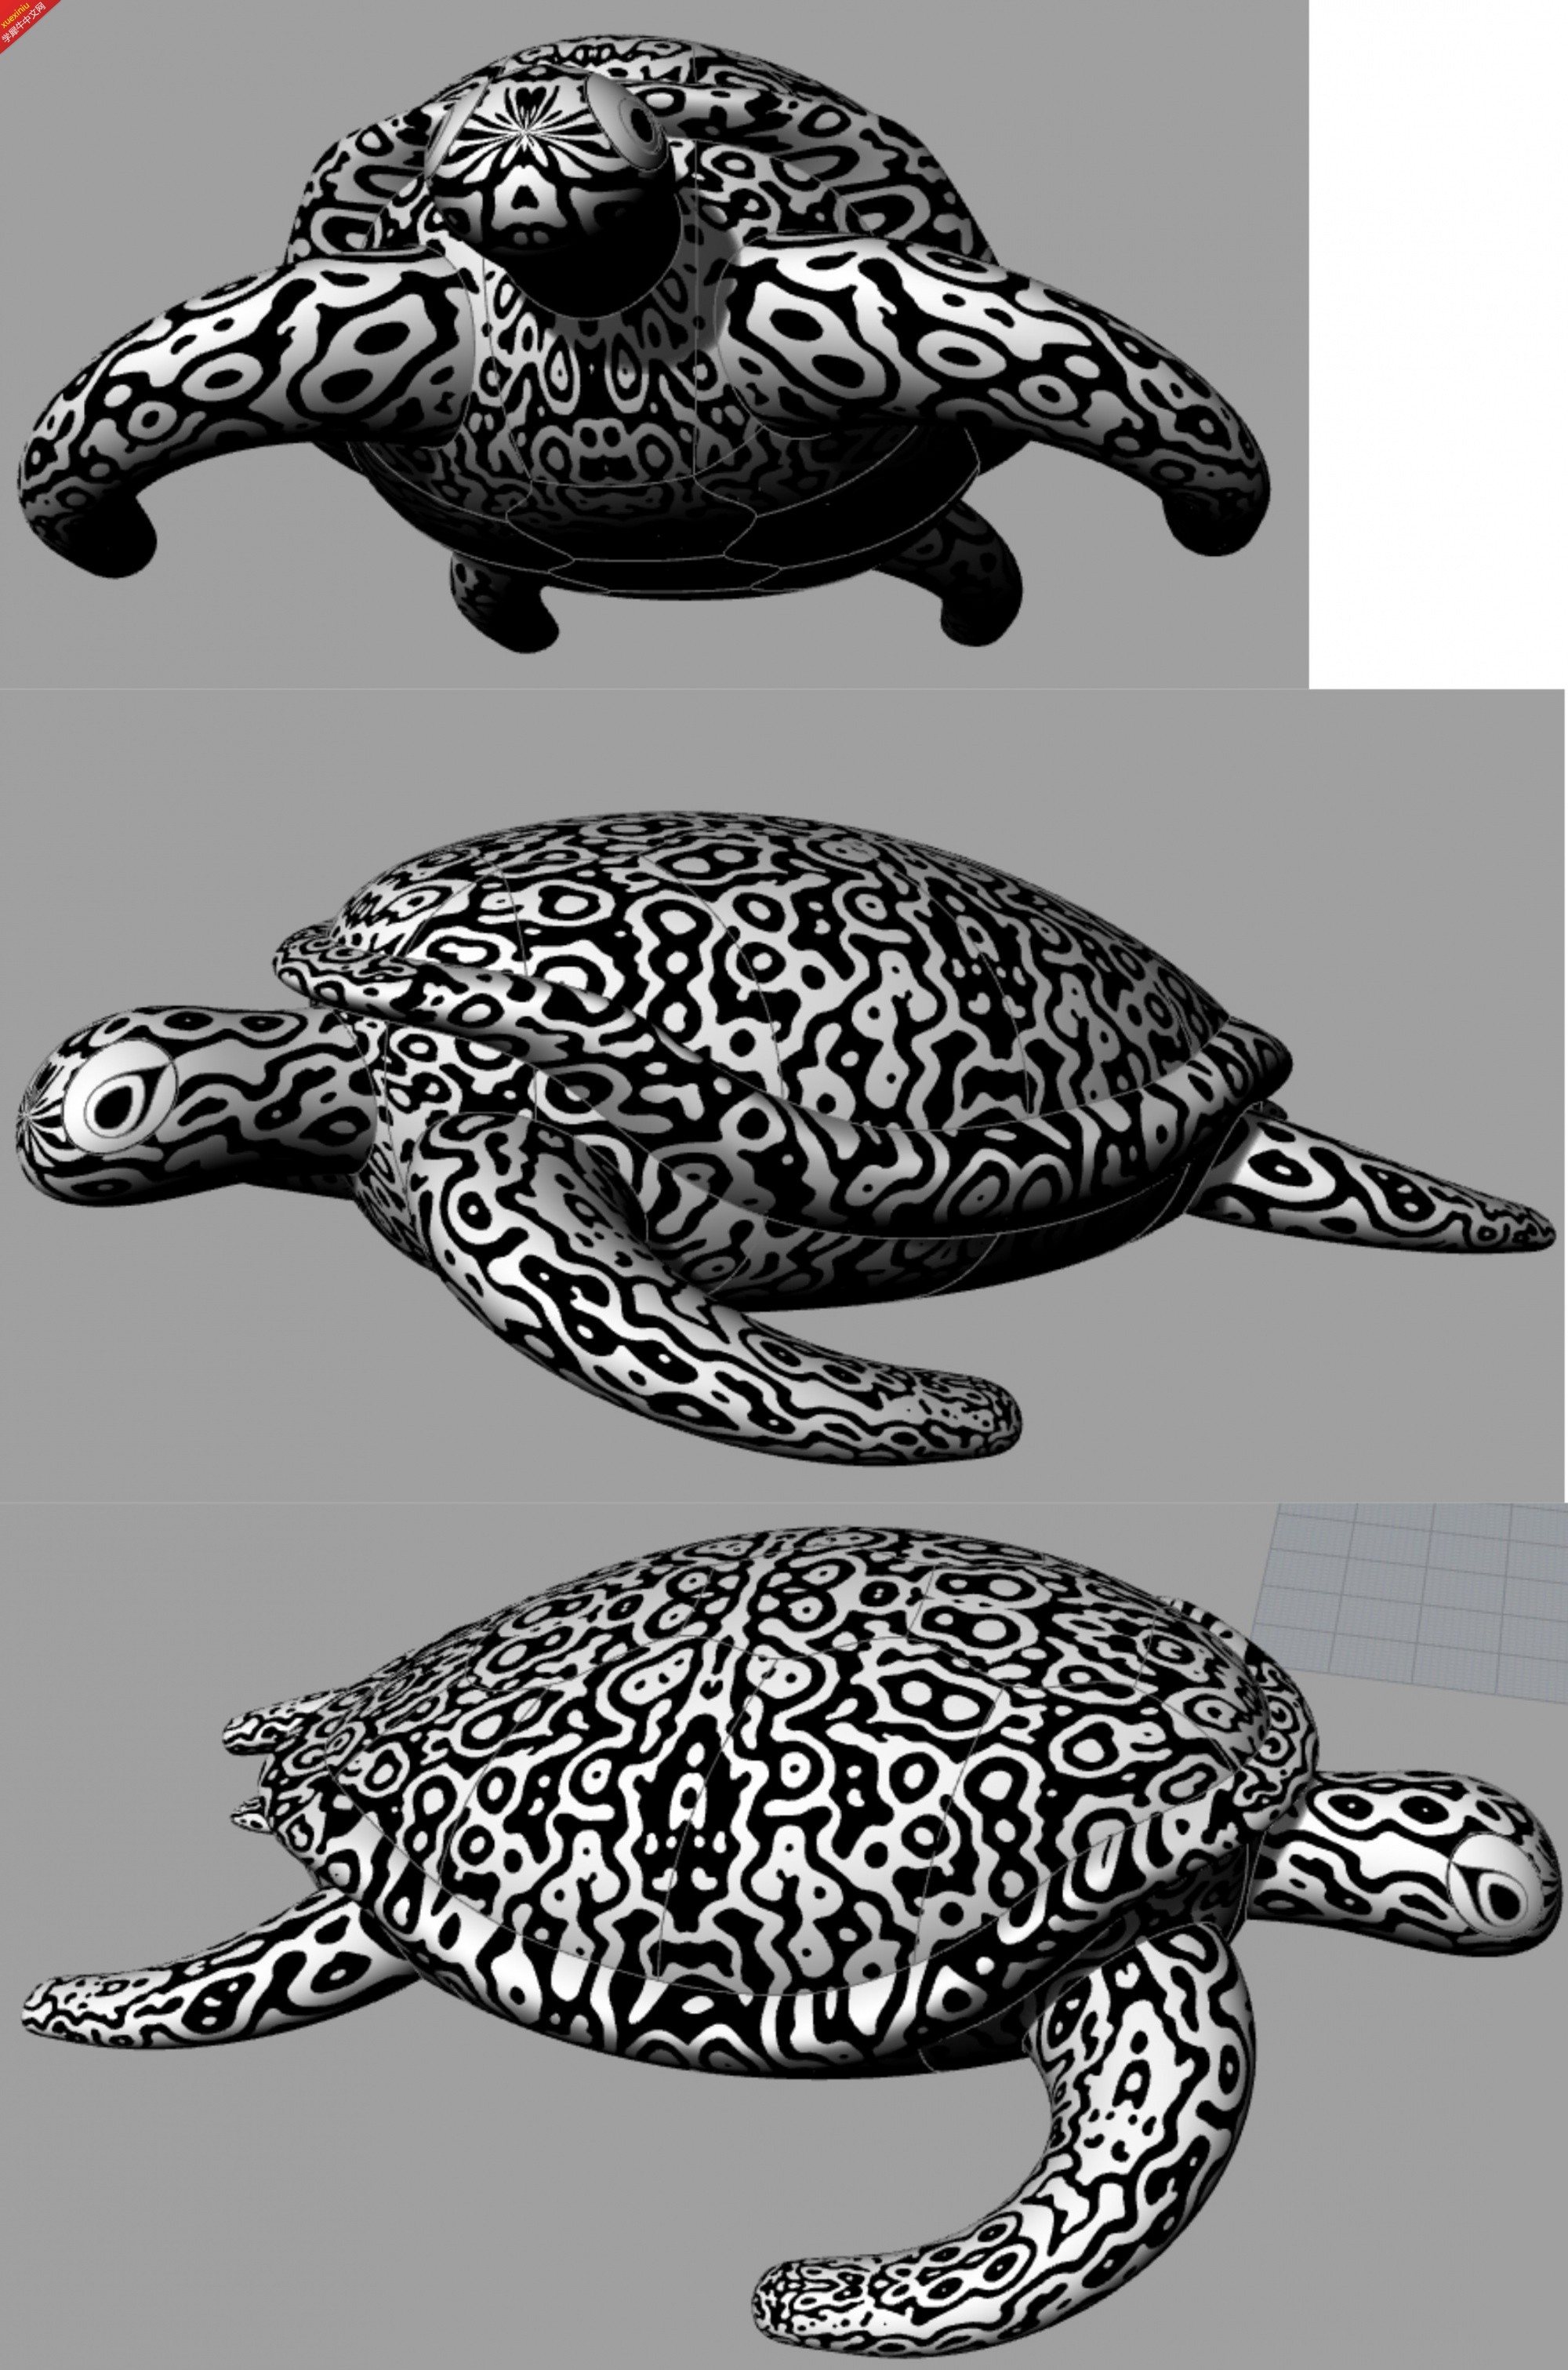 大海龟.jpg